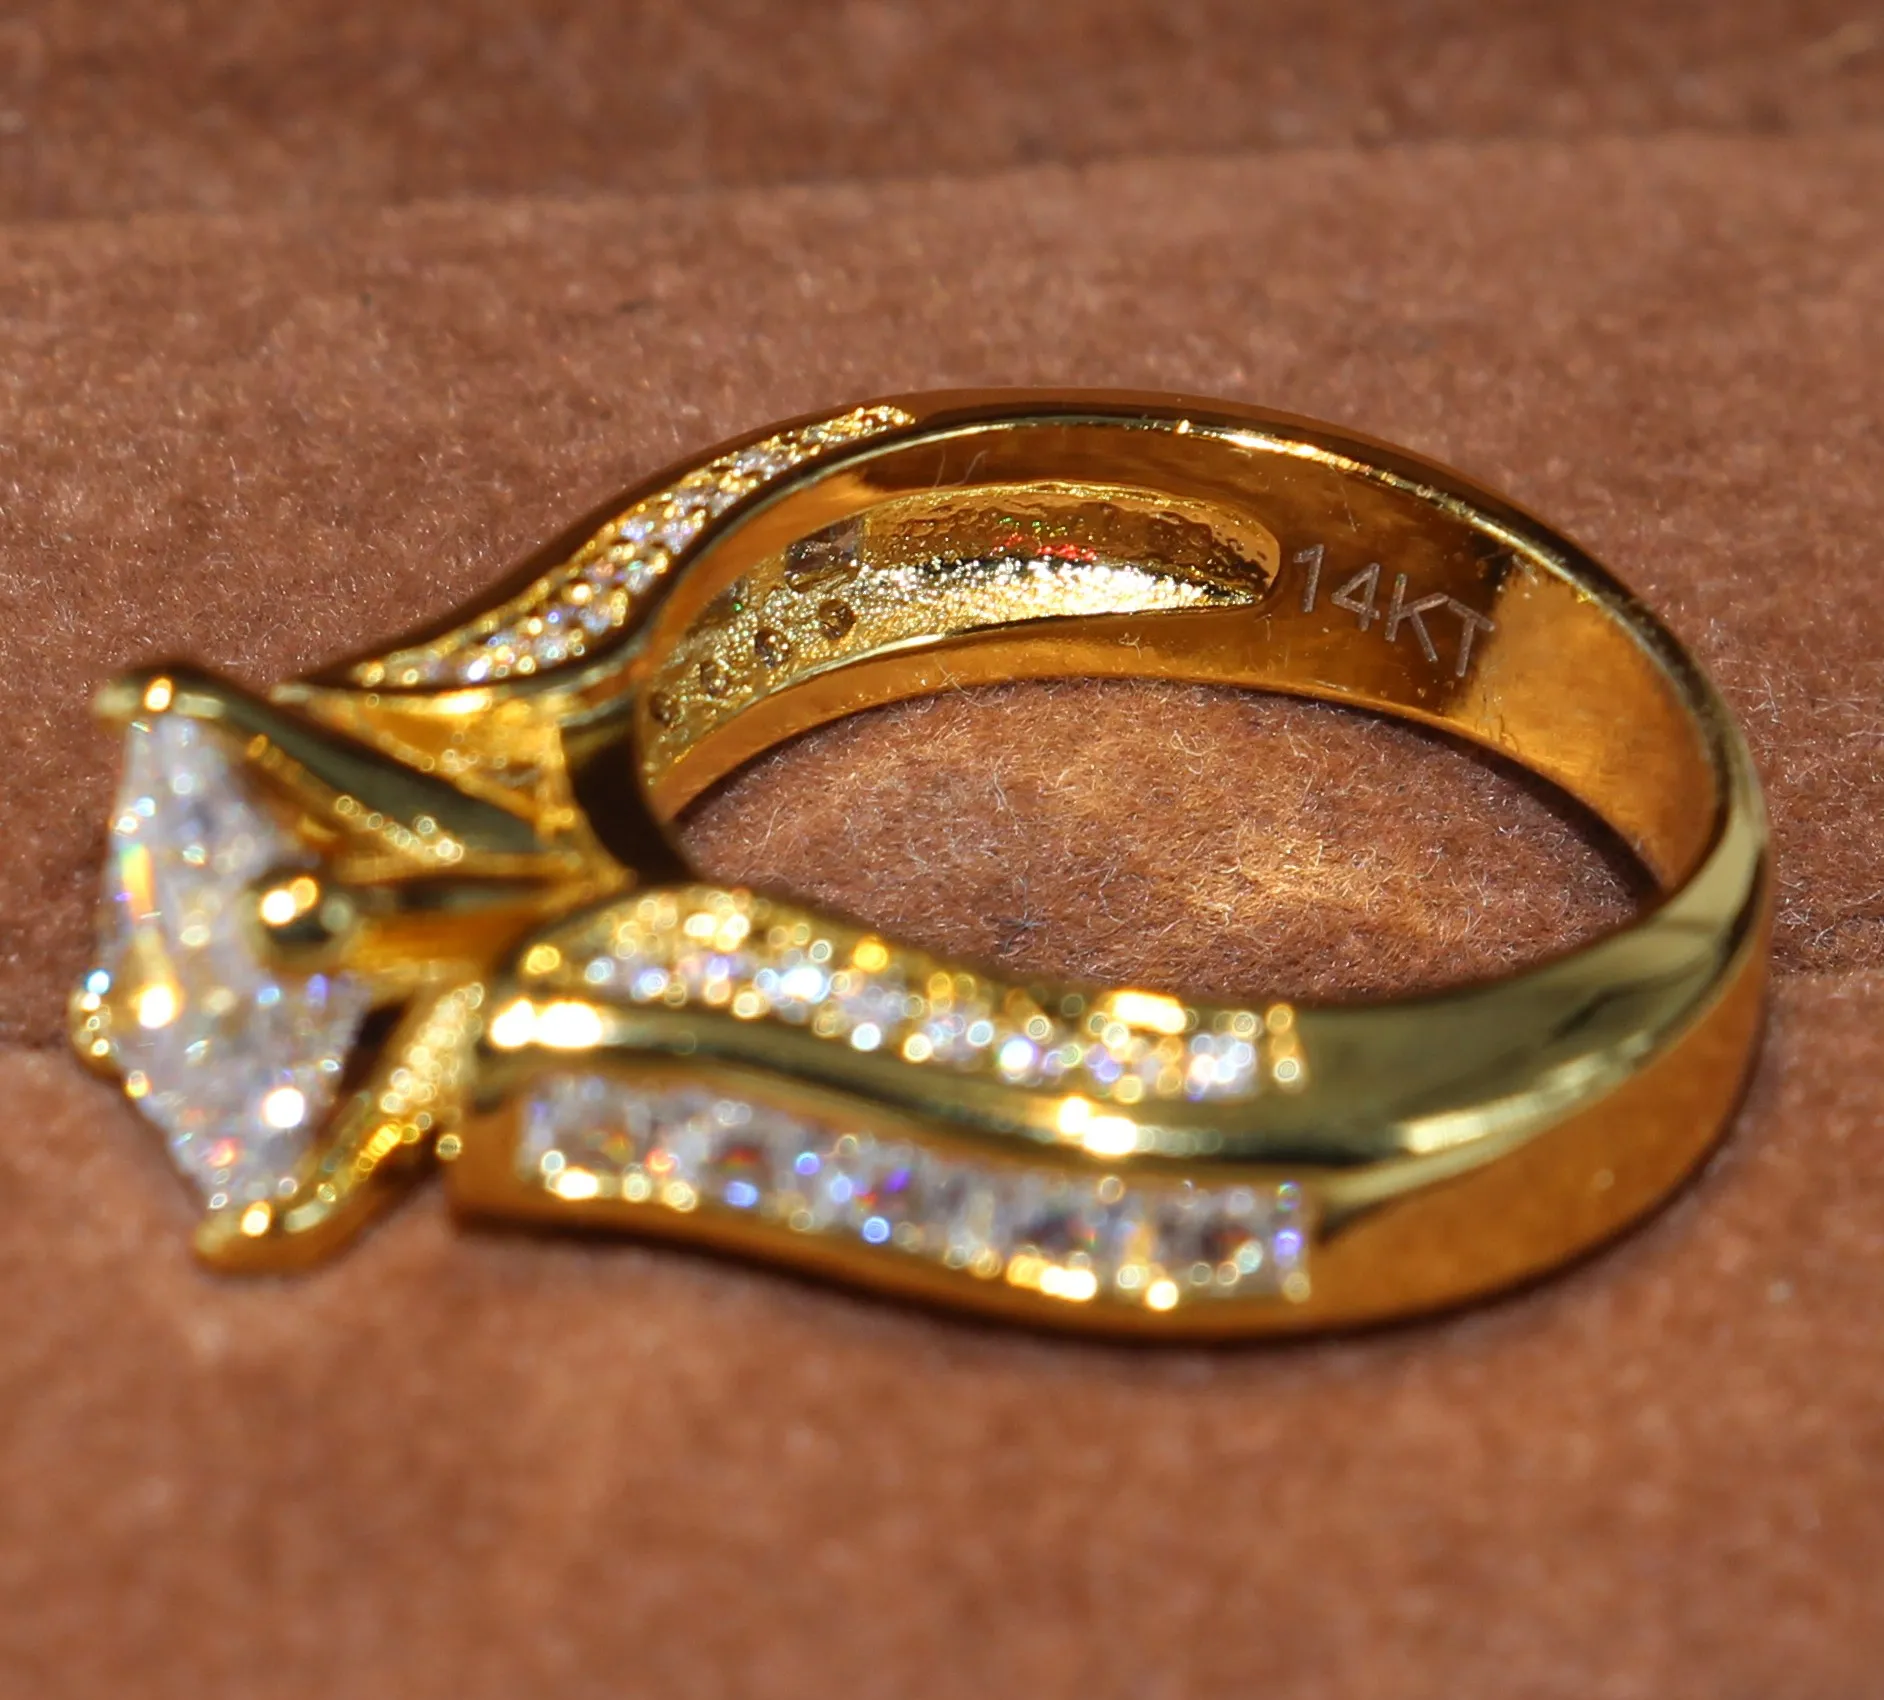 Mujeres anillo de bodas Tamaño joyería 5-11 espumoso cuadrado de la manera 14KT Yellow Gold Filled corte princesa partido Topaz blanco piedras preciosas CZ Diamond